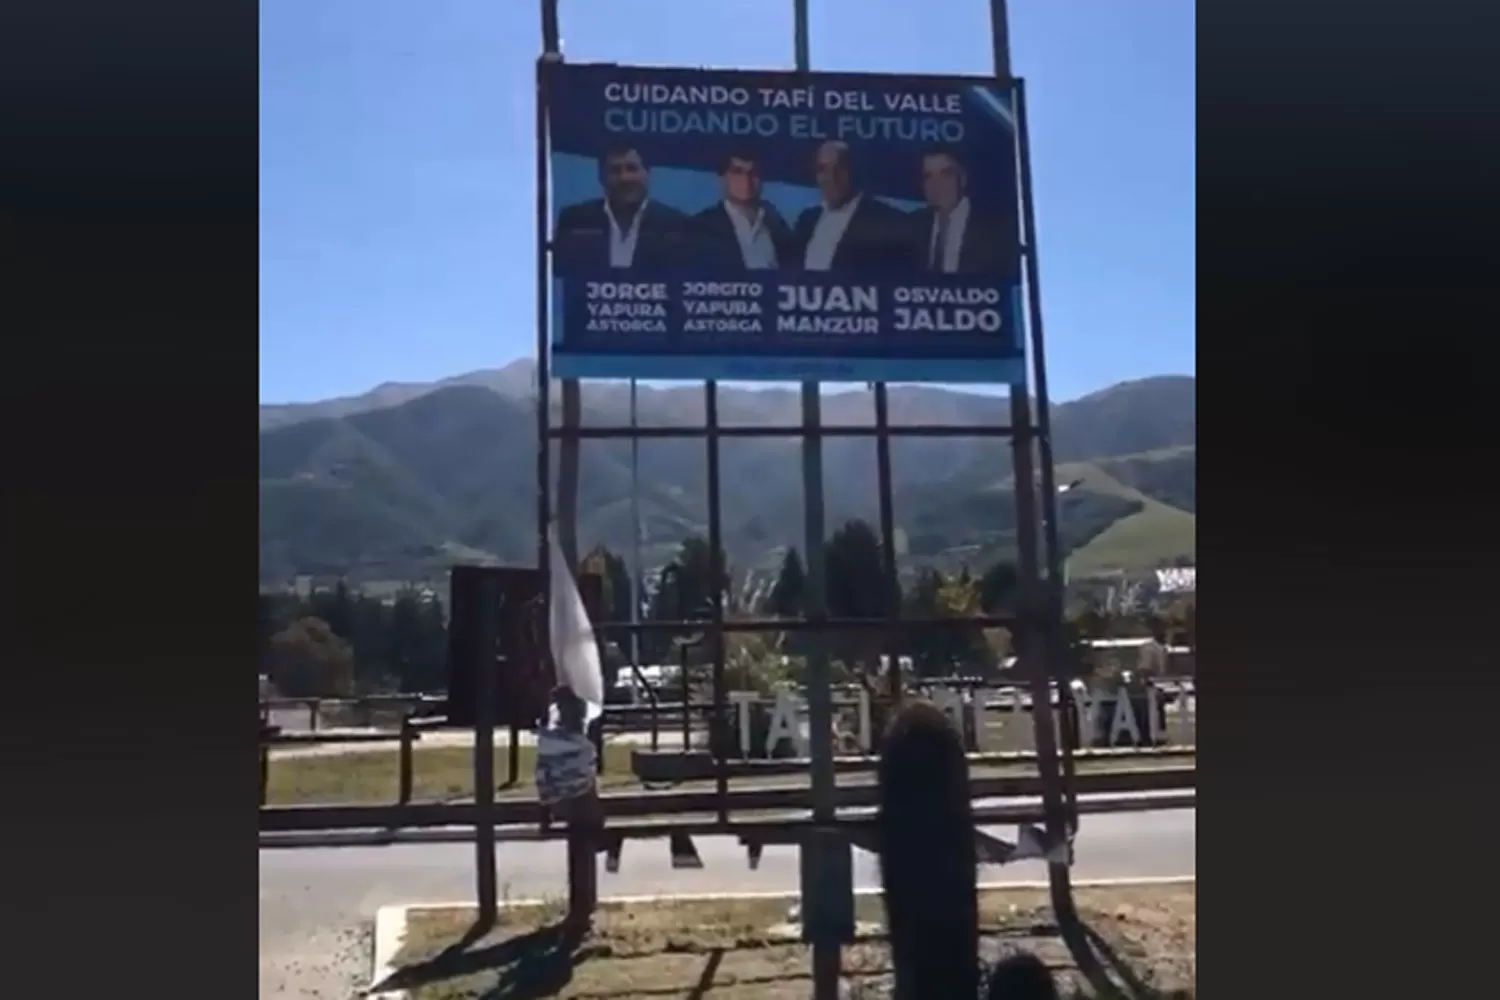 Se viralizó un video que muestra el paisaje de Tafí del Valle tapado por propaganda política